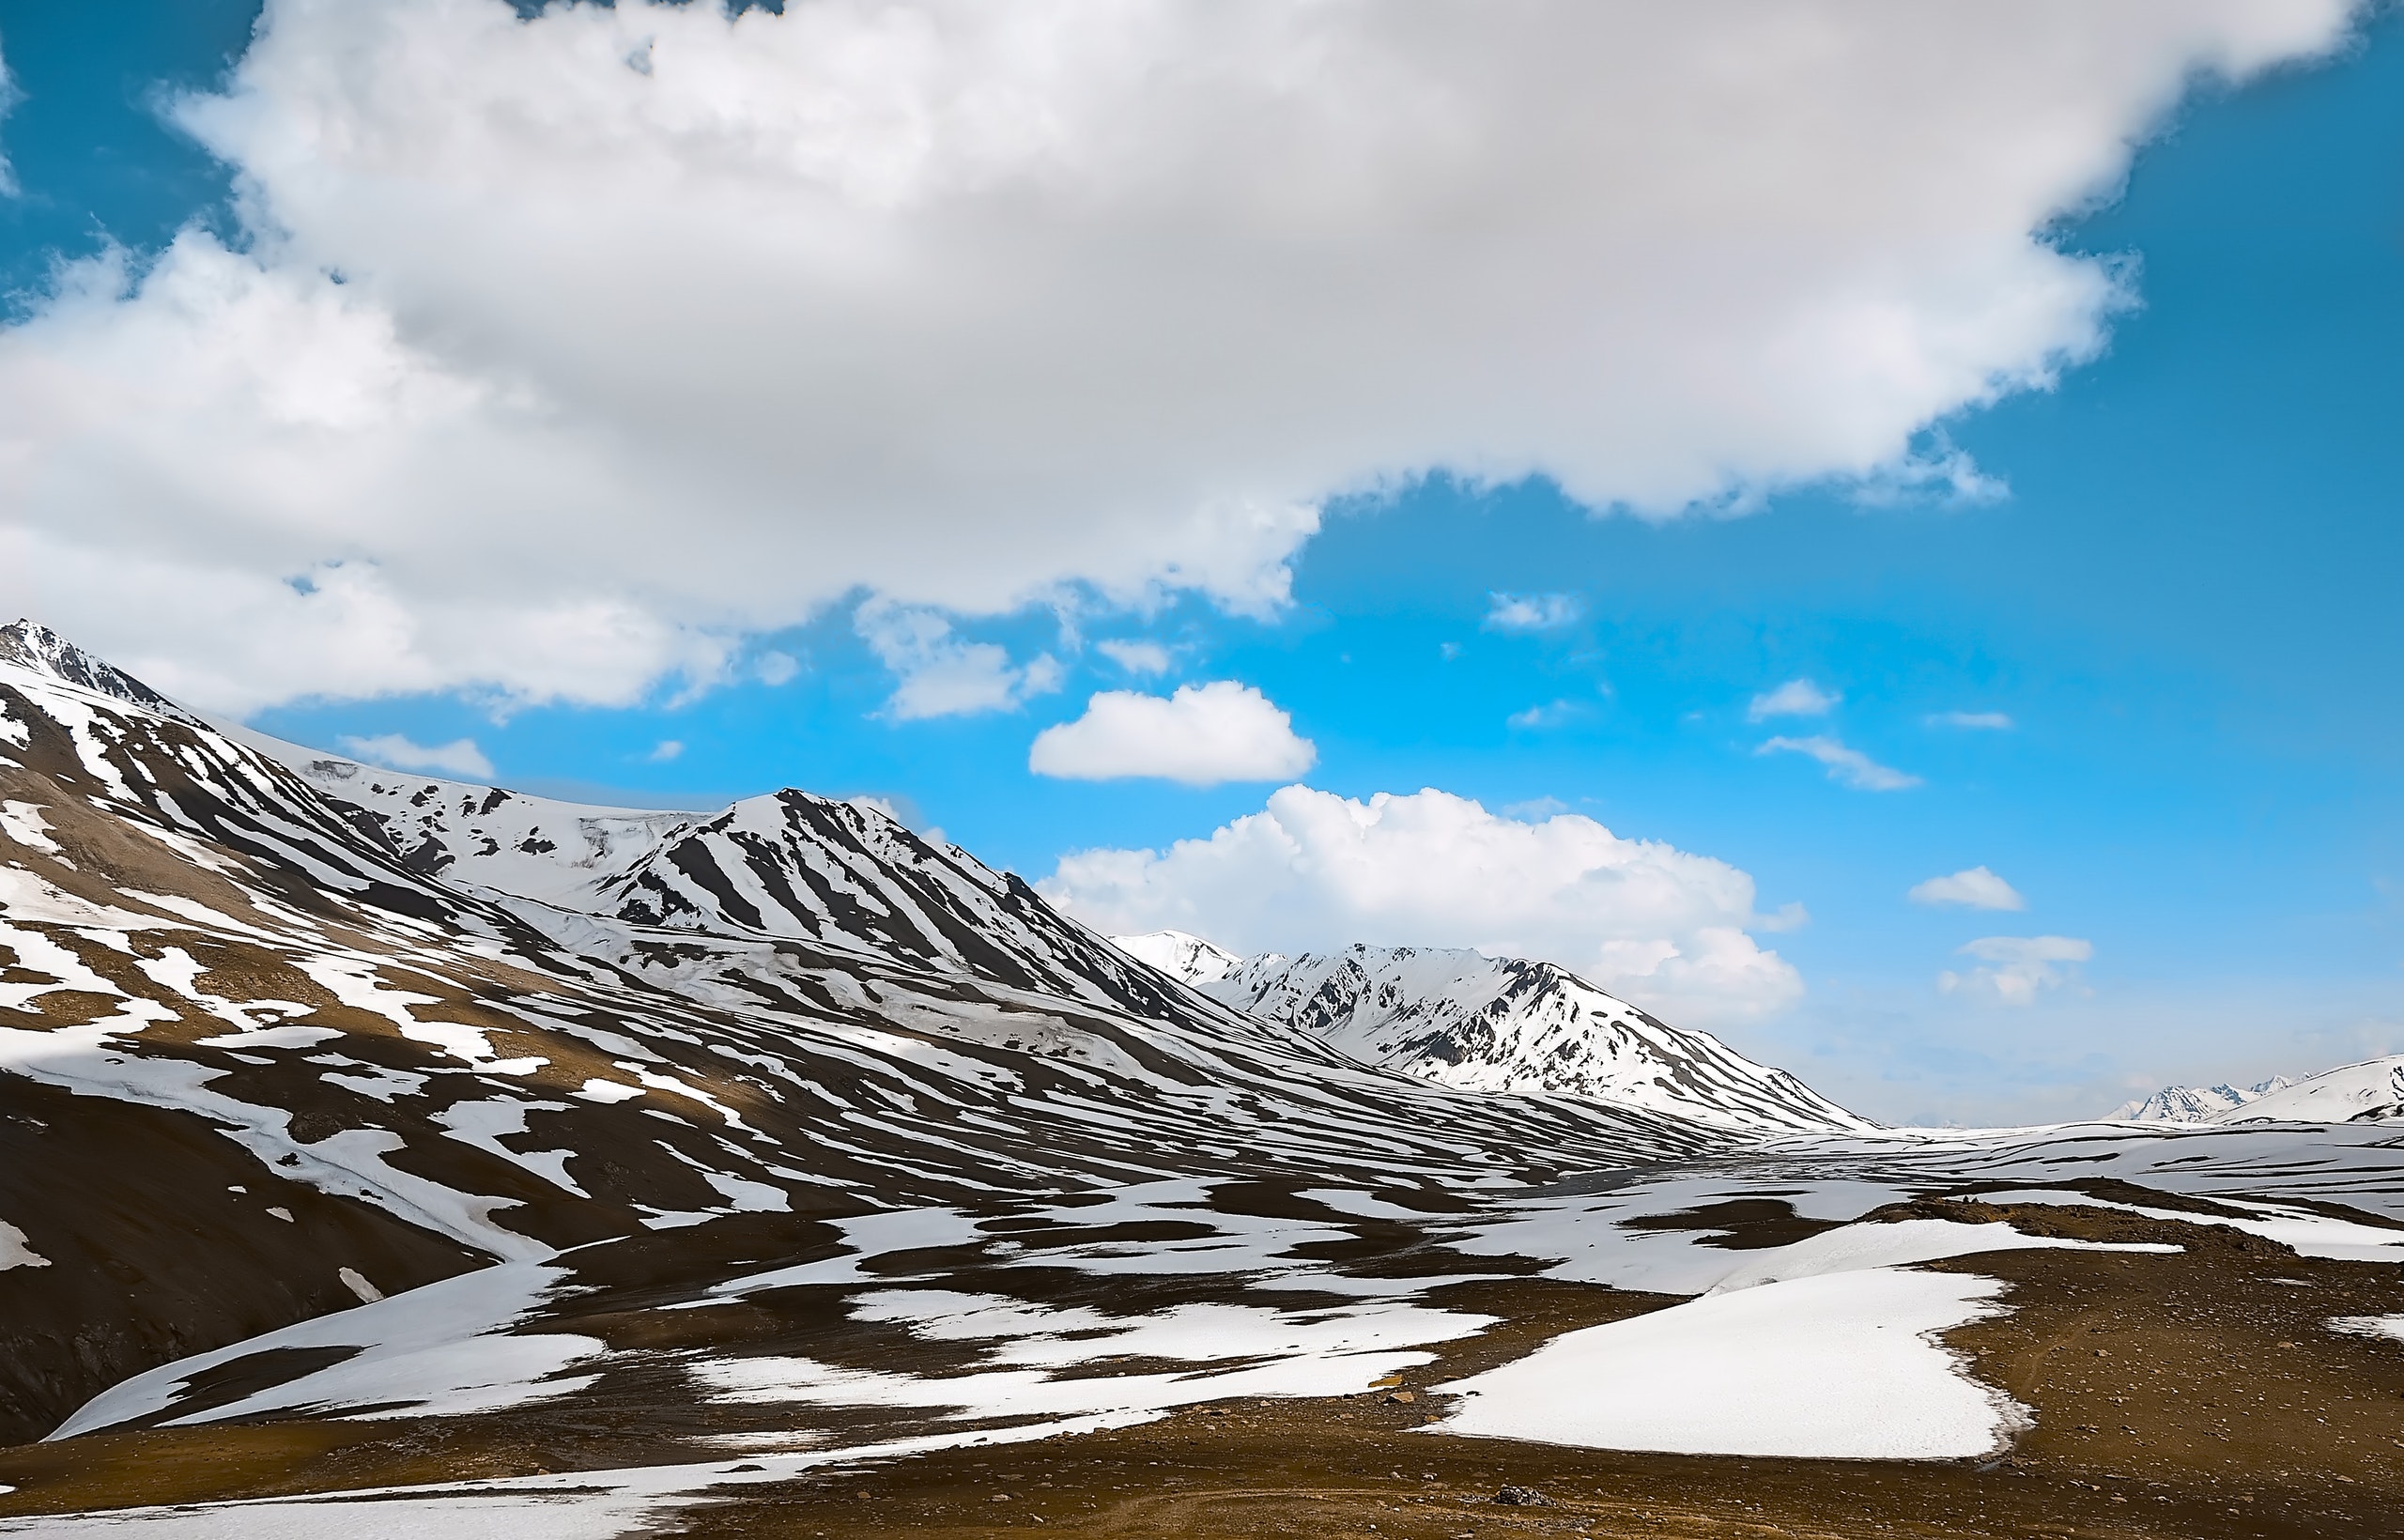 Top View Of Himalaya Hd Wallpaper 2560x1640p - Mountain Worm Eye View - HD Wallpaper 